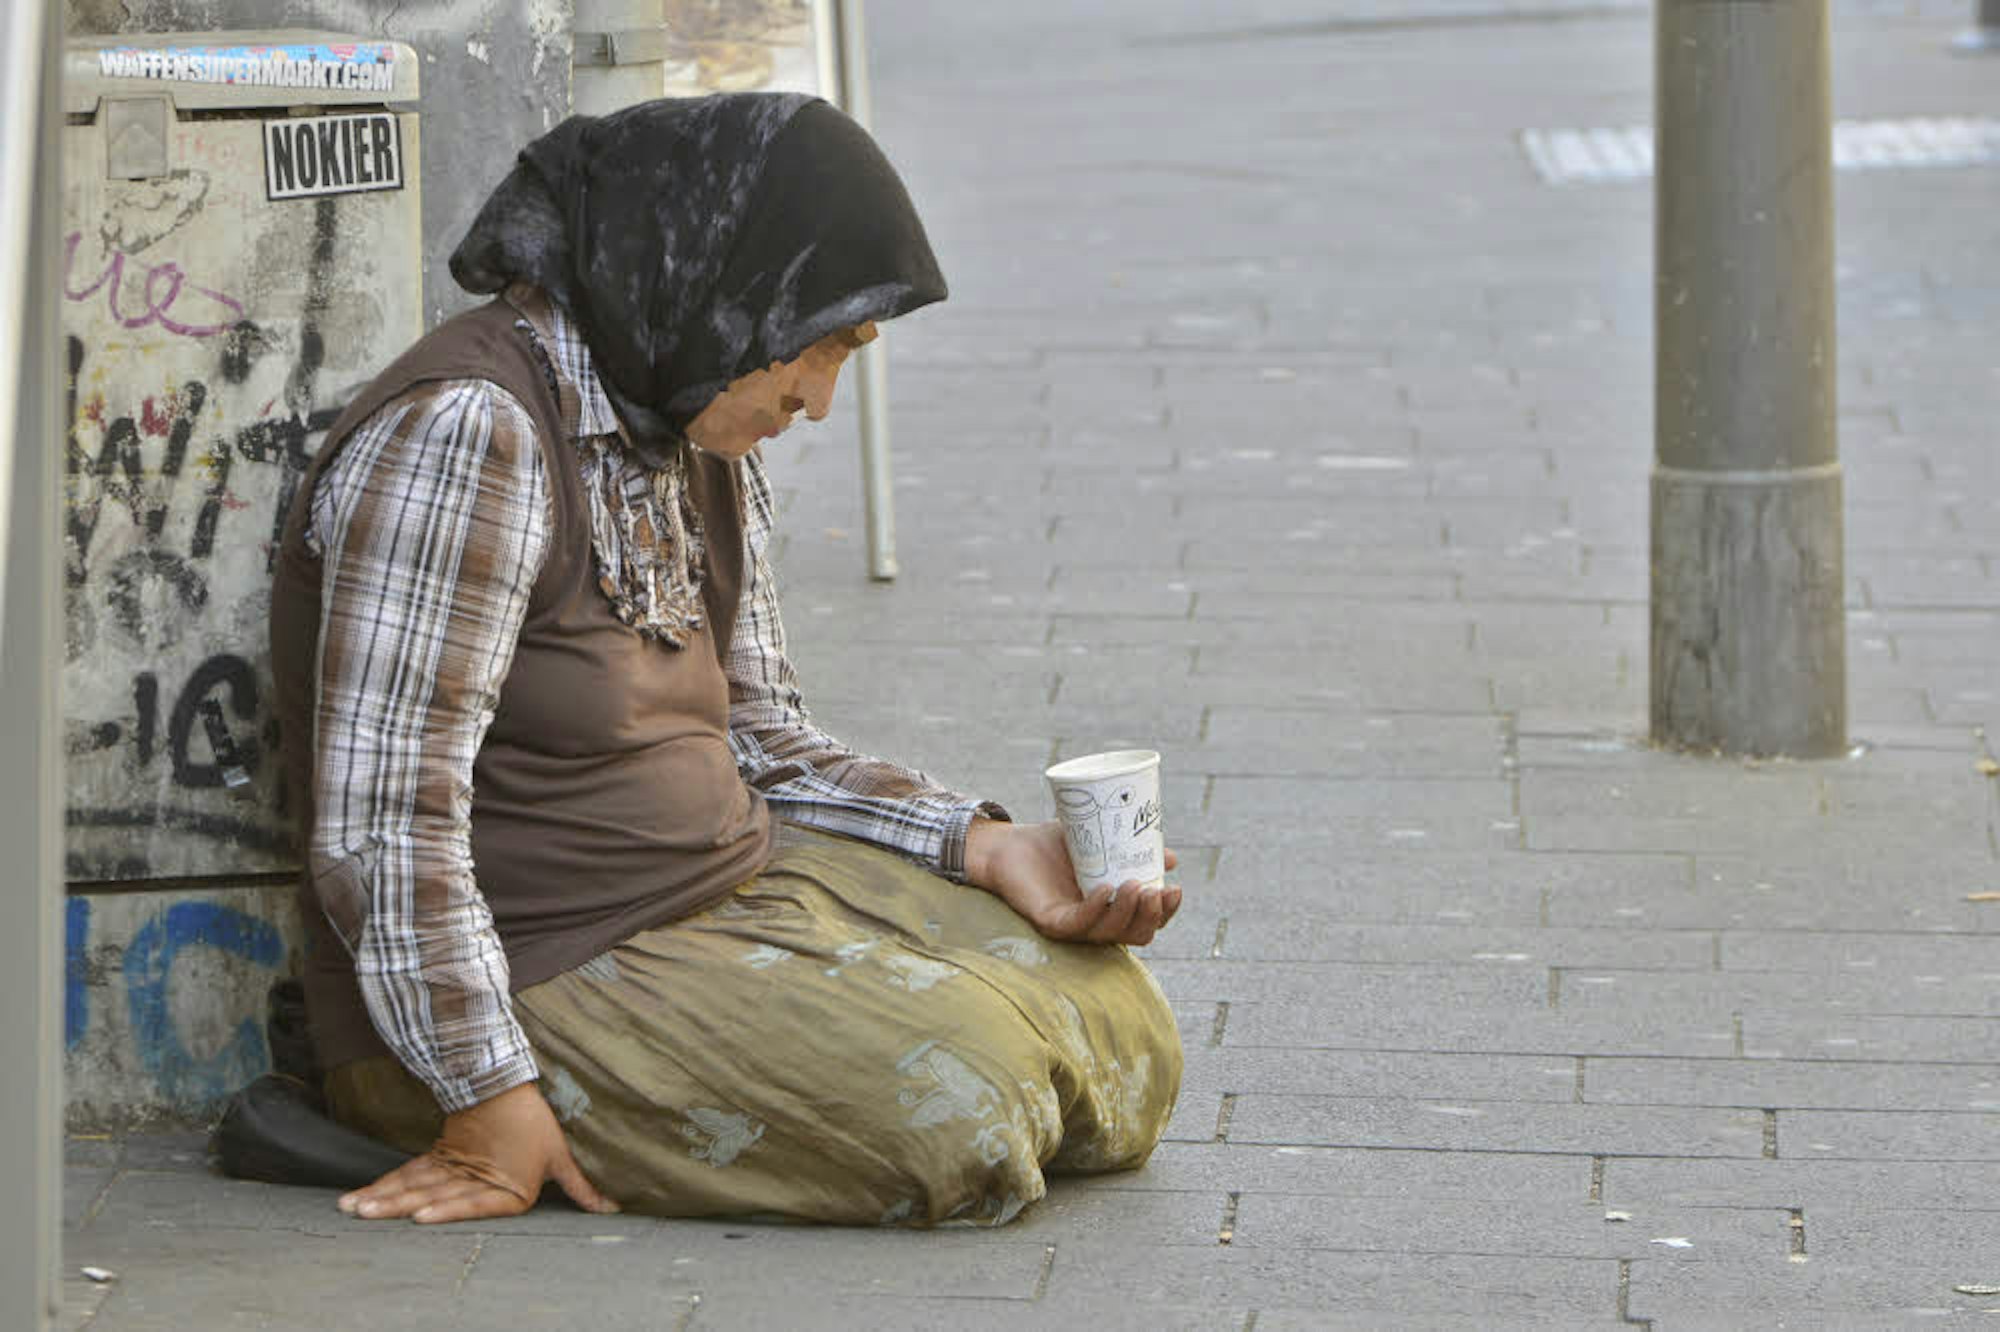 Viel Elend im Straßenbild: Bettler, Betrunkene und Obdachlose.